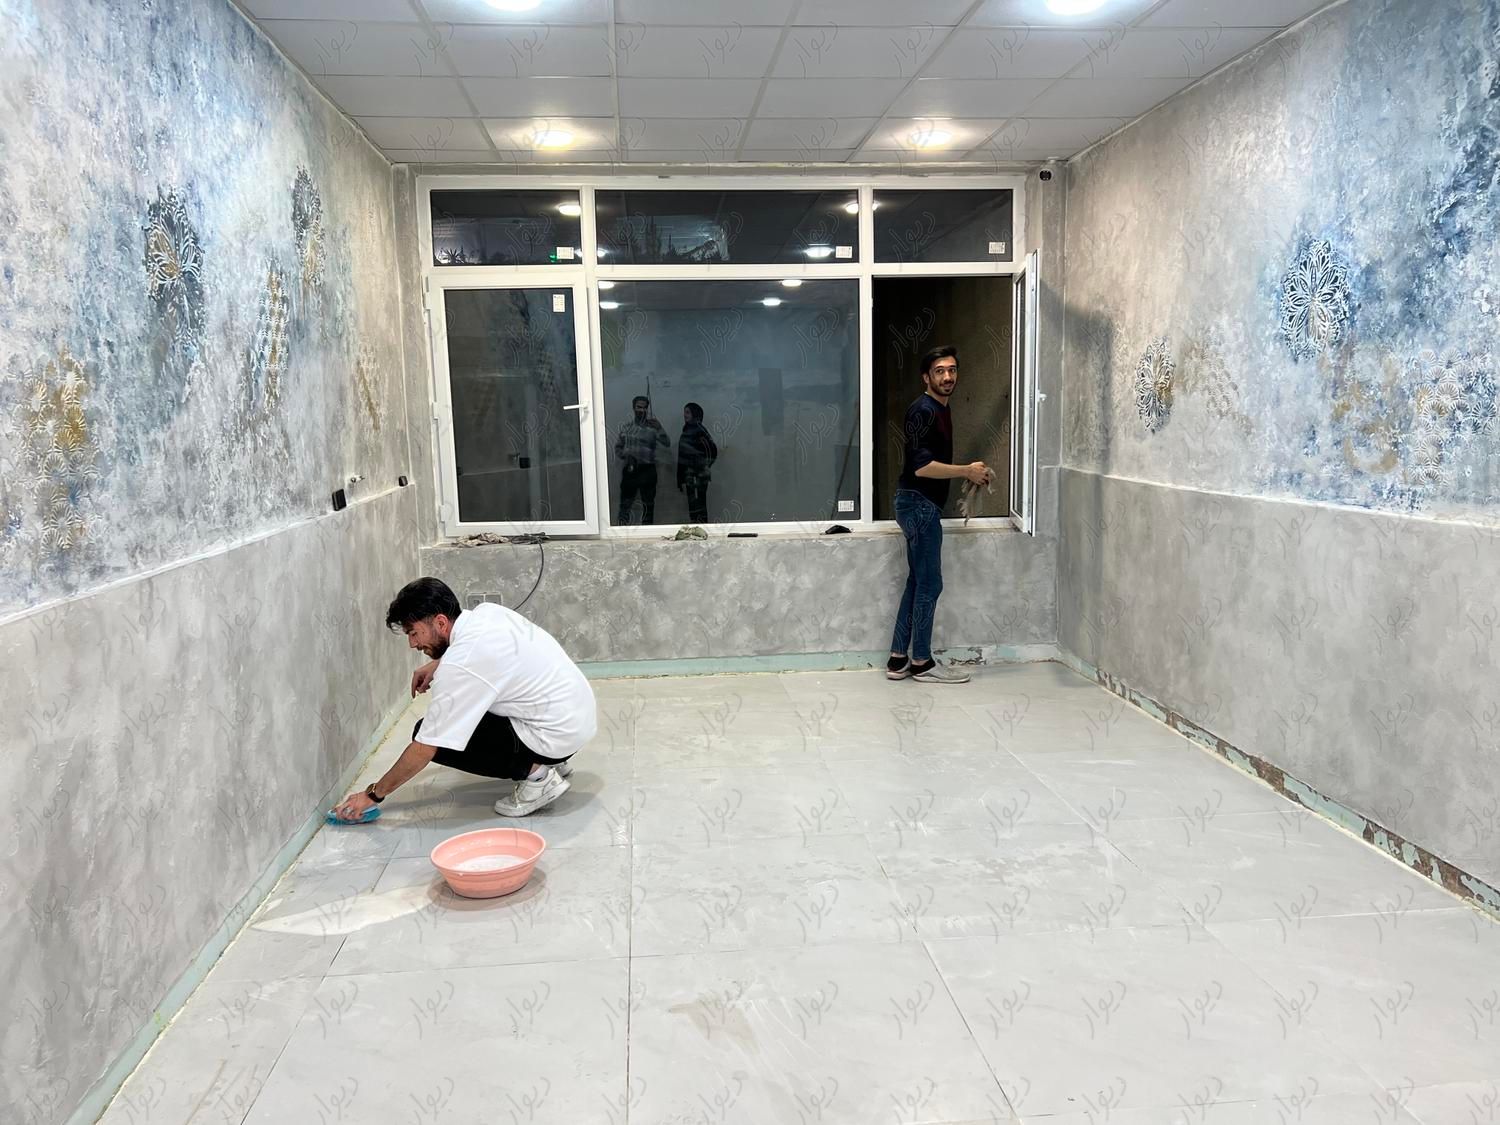 اجاره دفتر کار و اتاق با امکانات کامل|اجارهٔ کوتاه مدت دفتر کار و فضای آموزشی|مشهد, احمدآباد|دیوار